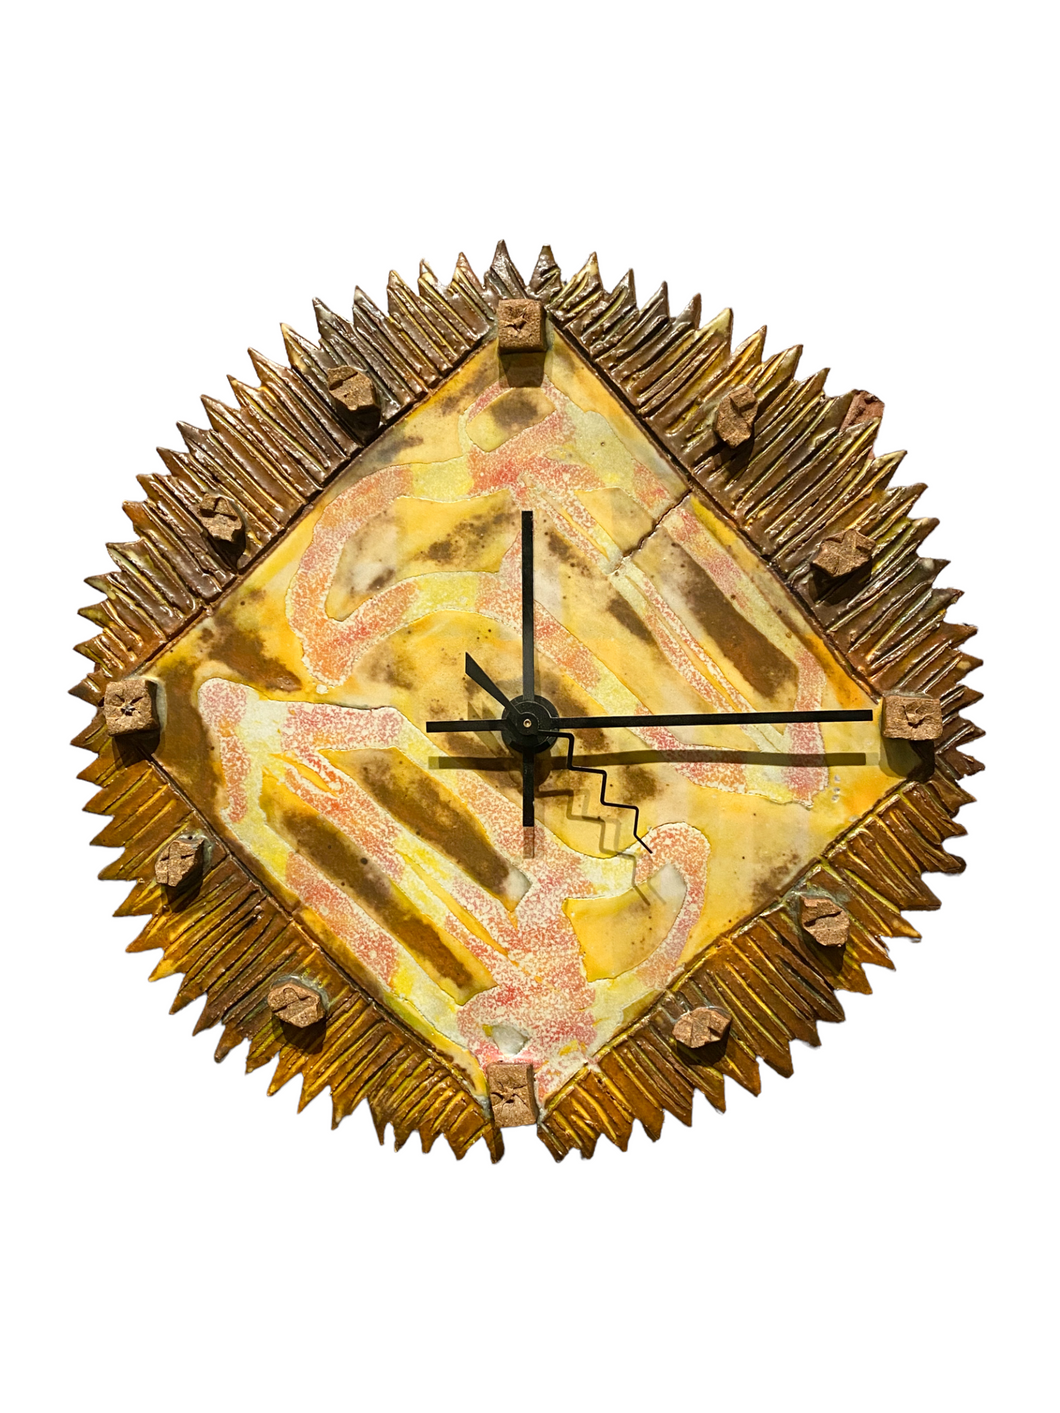 Vintage Ceramic Clock